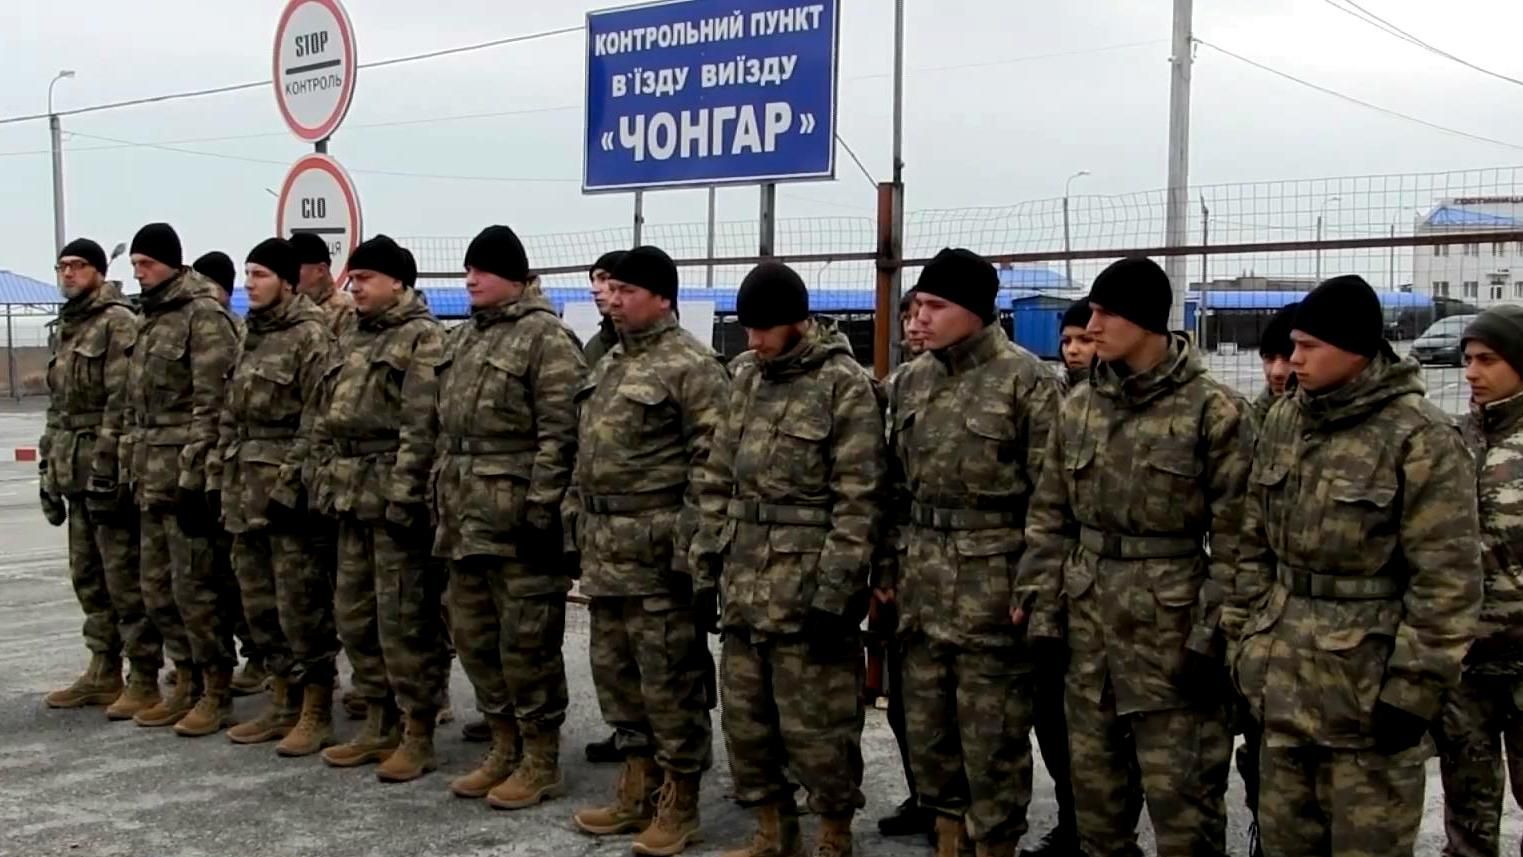 Як проходить переформатована блокада Криму: репортаж із "Чонгару"